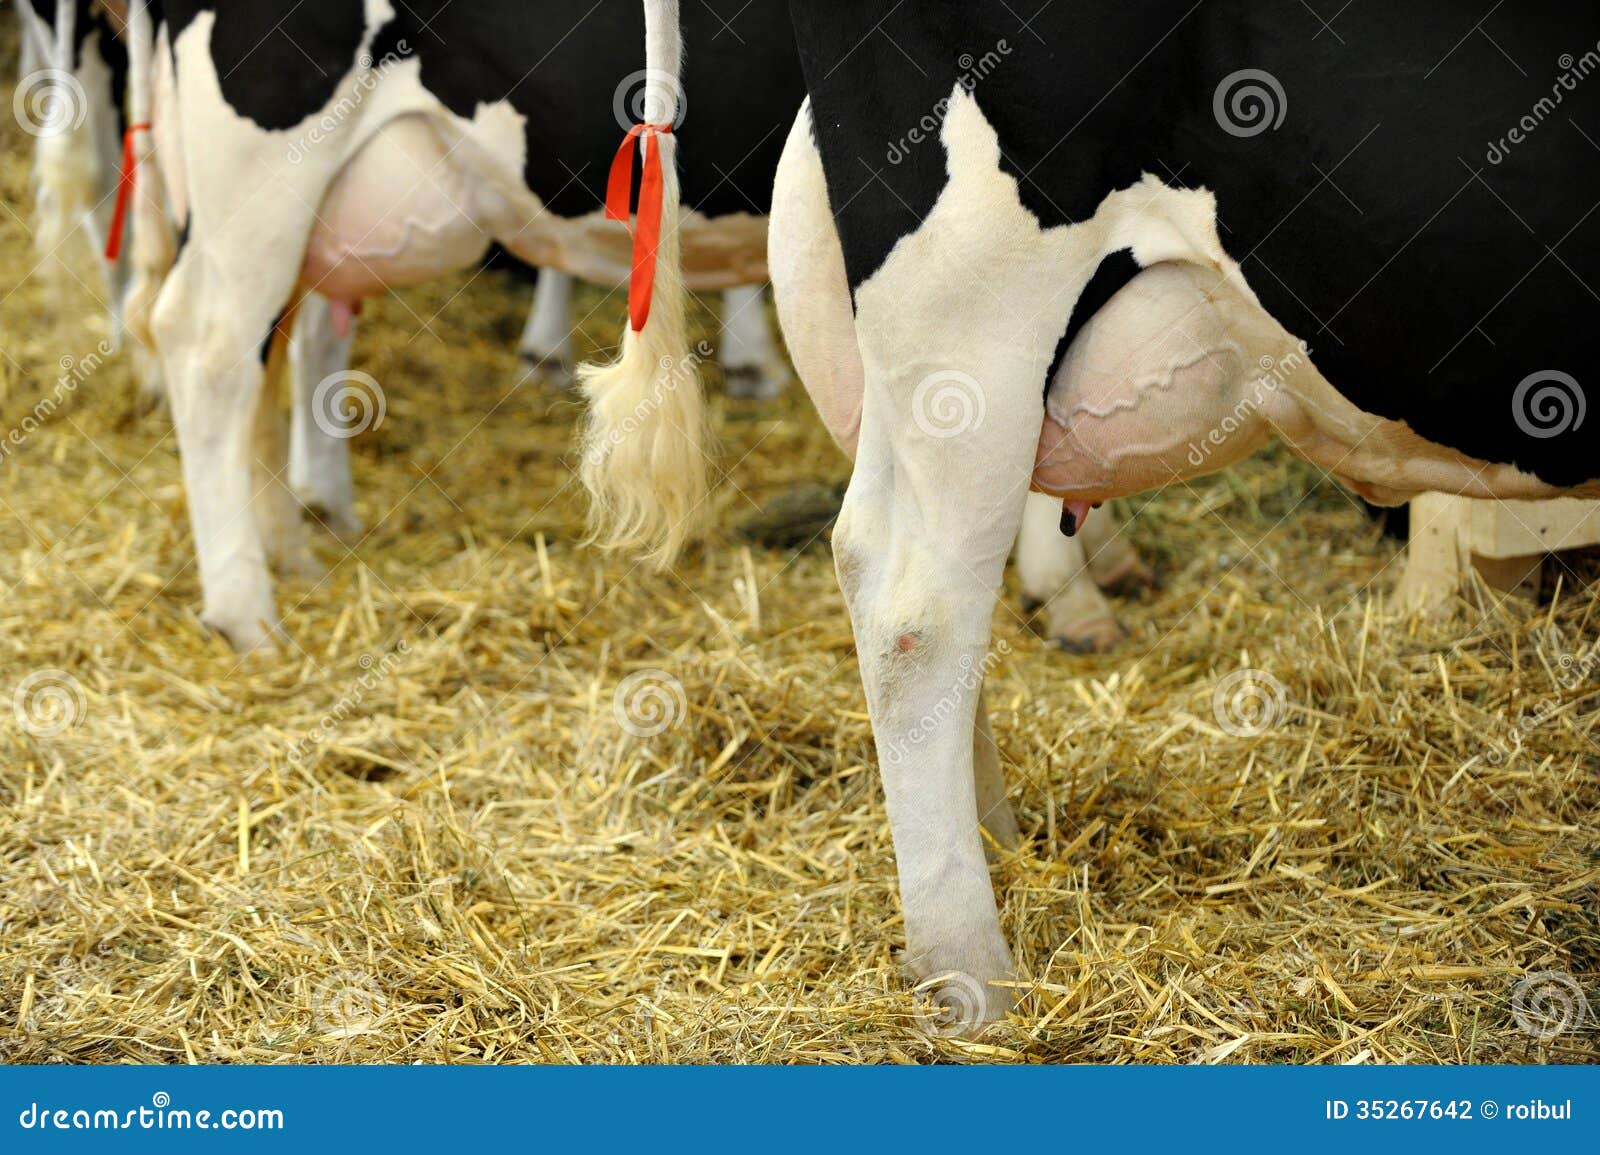 holstein-dairy-cow-udder-detail-full-35267642.jpg